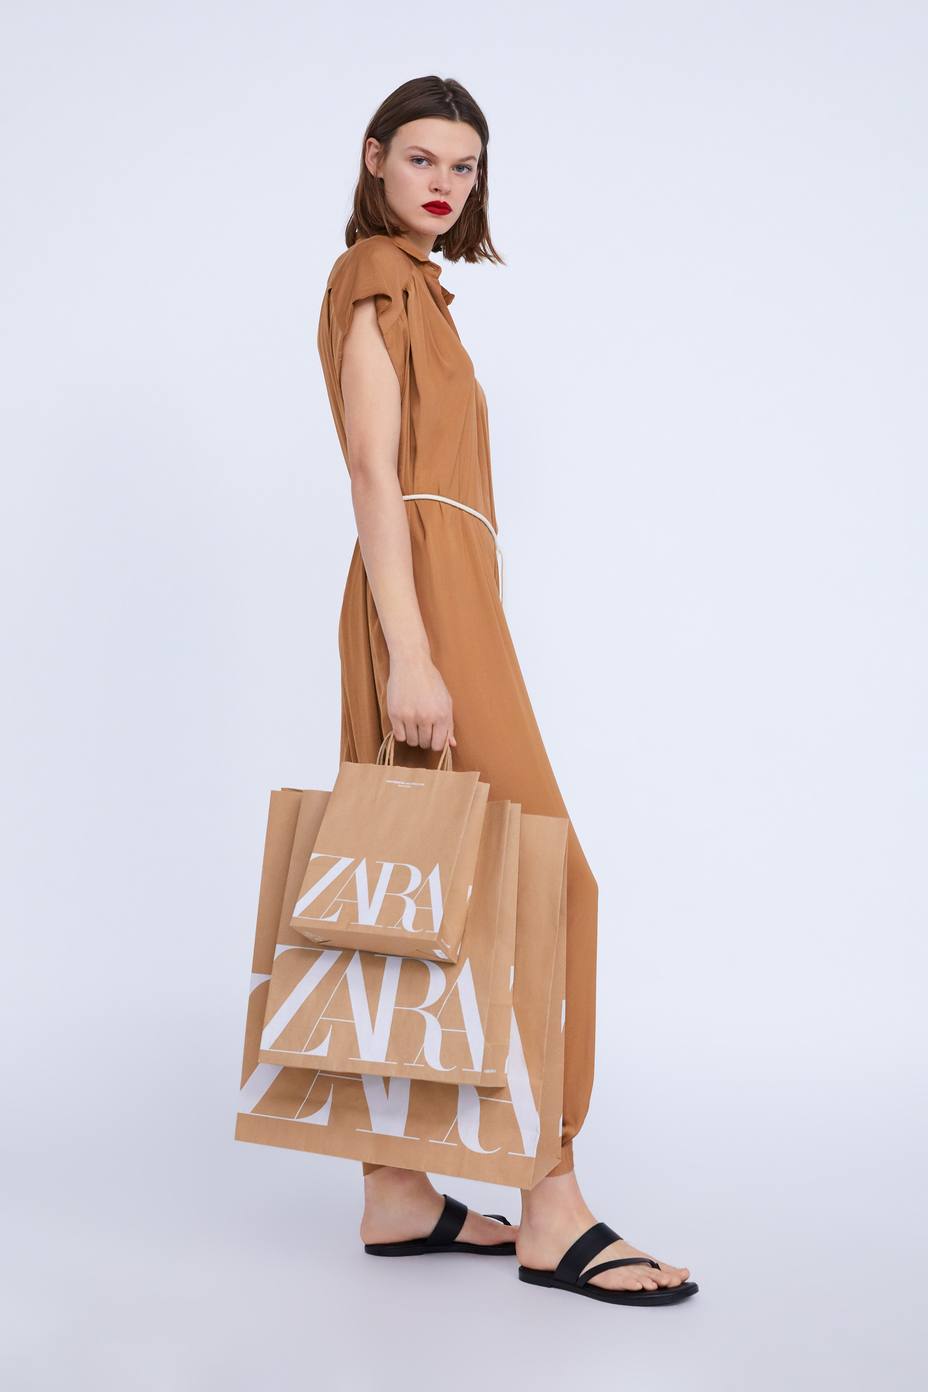 Zara eliminará desde el viernes las bolsas de plástico y usará solo bolsas de papel reciclado